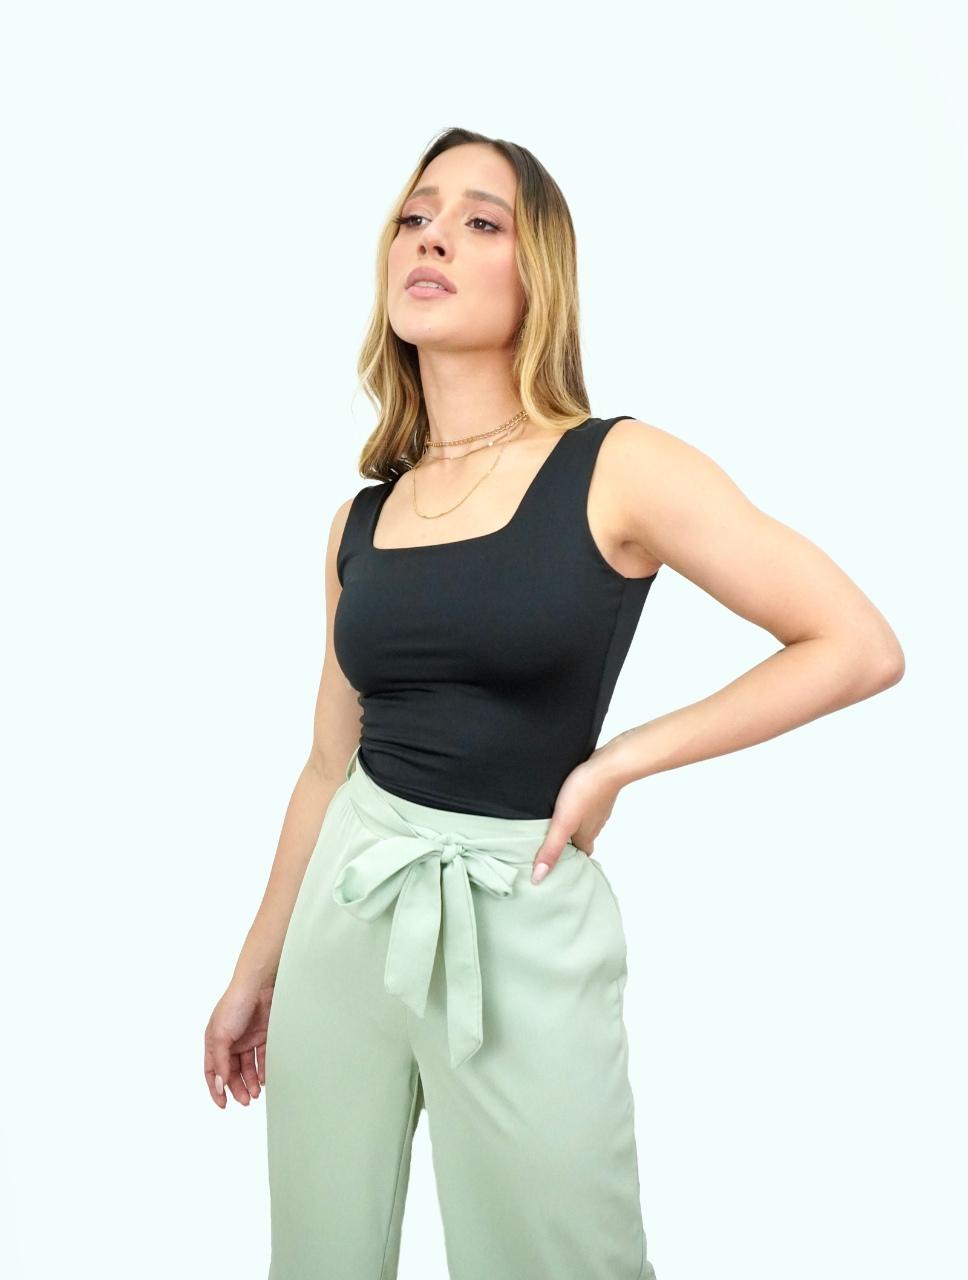 Pantalón para Mujer Verde Claro Tiro Alto - Megan Verde Claro